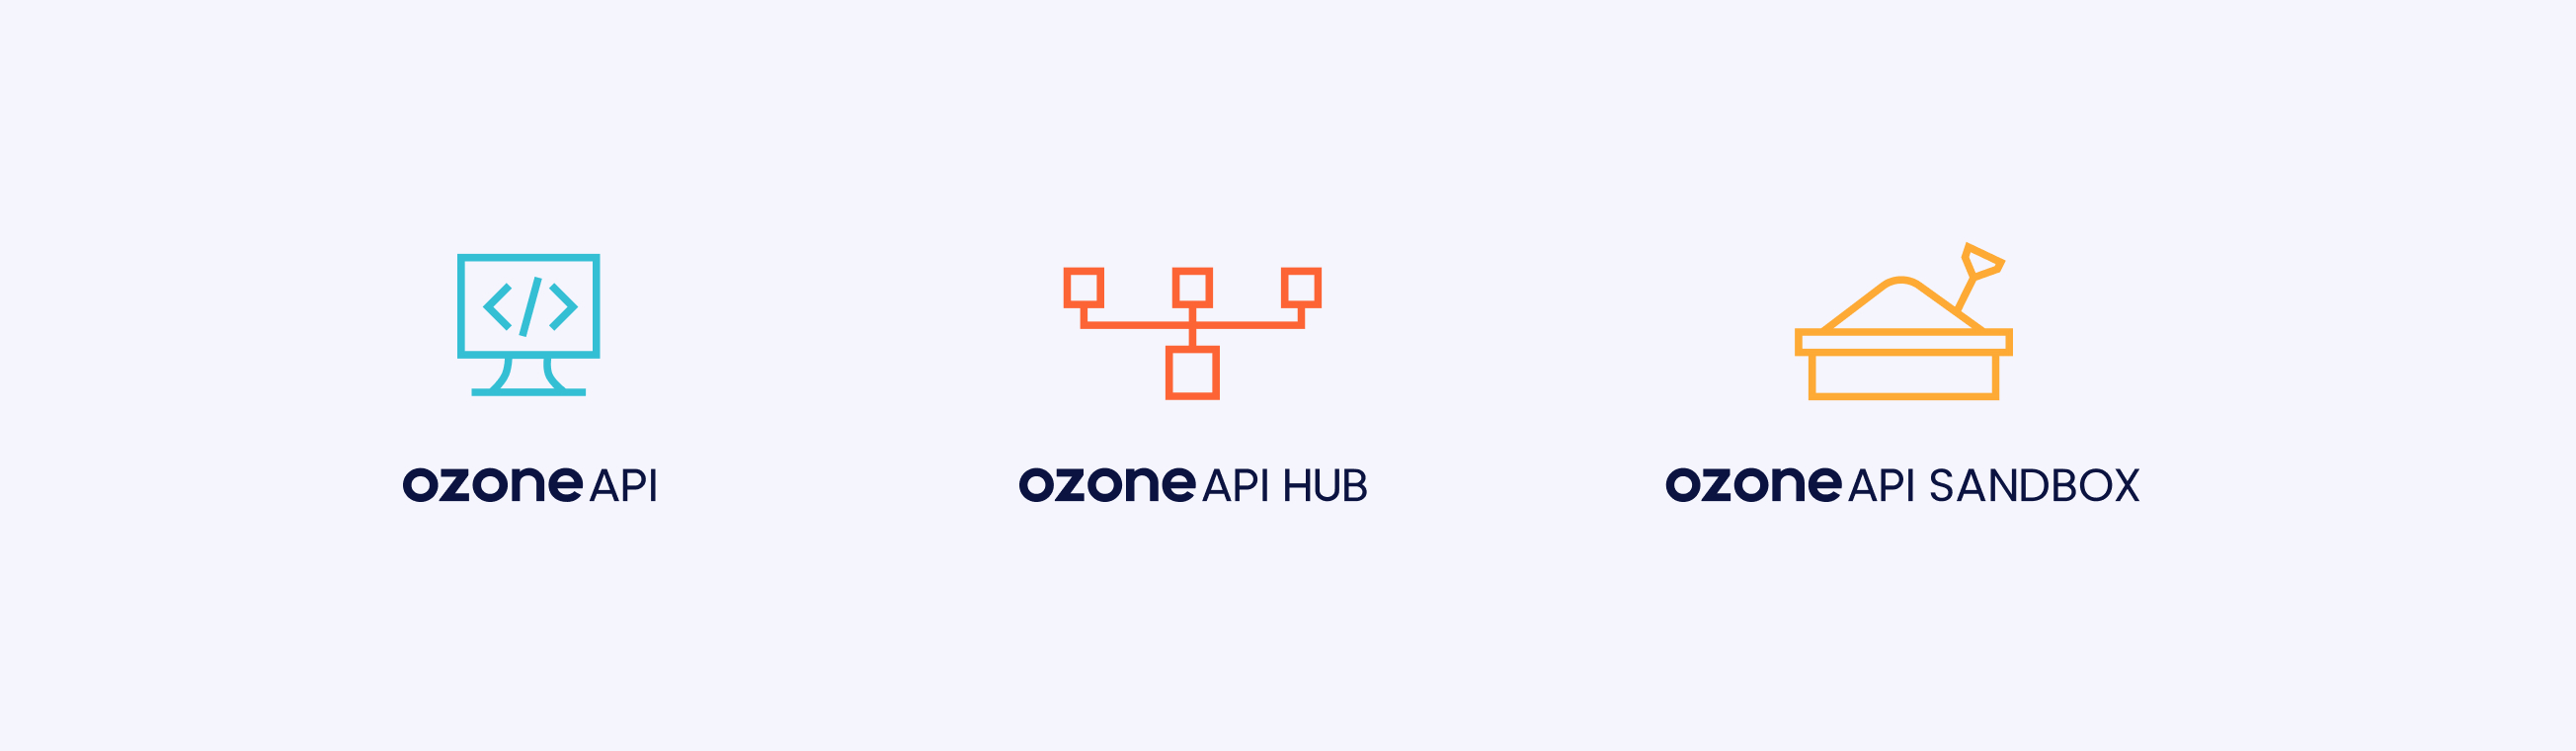 Ozone API -  image-8 - Qubstudio